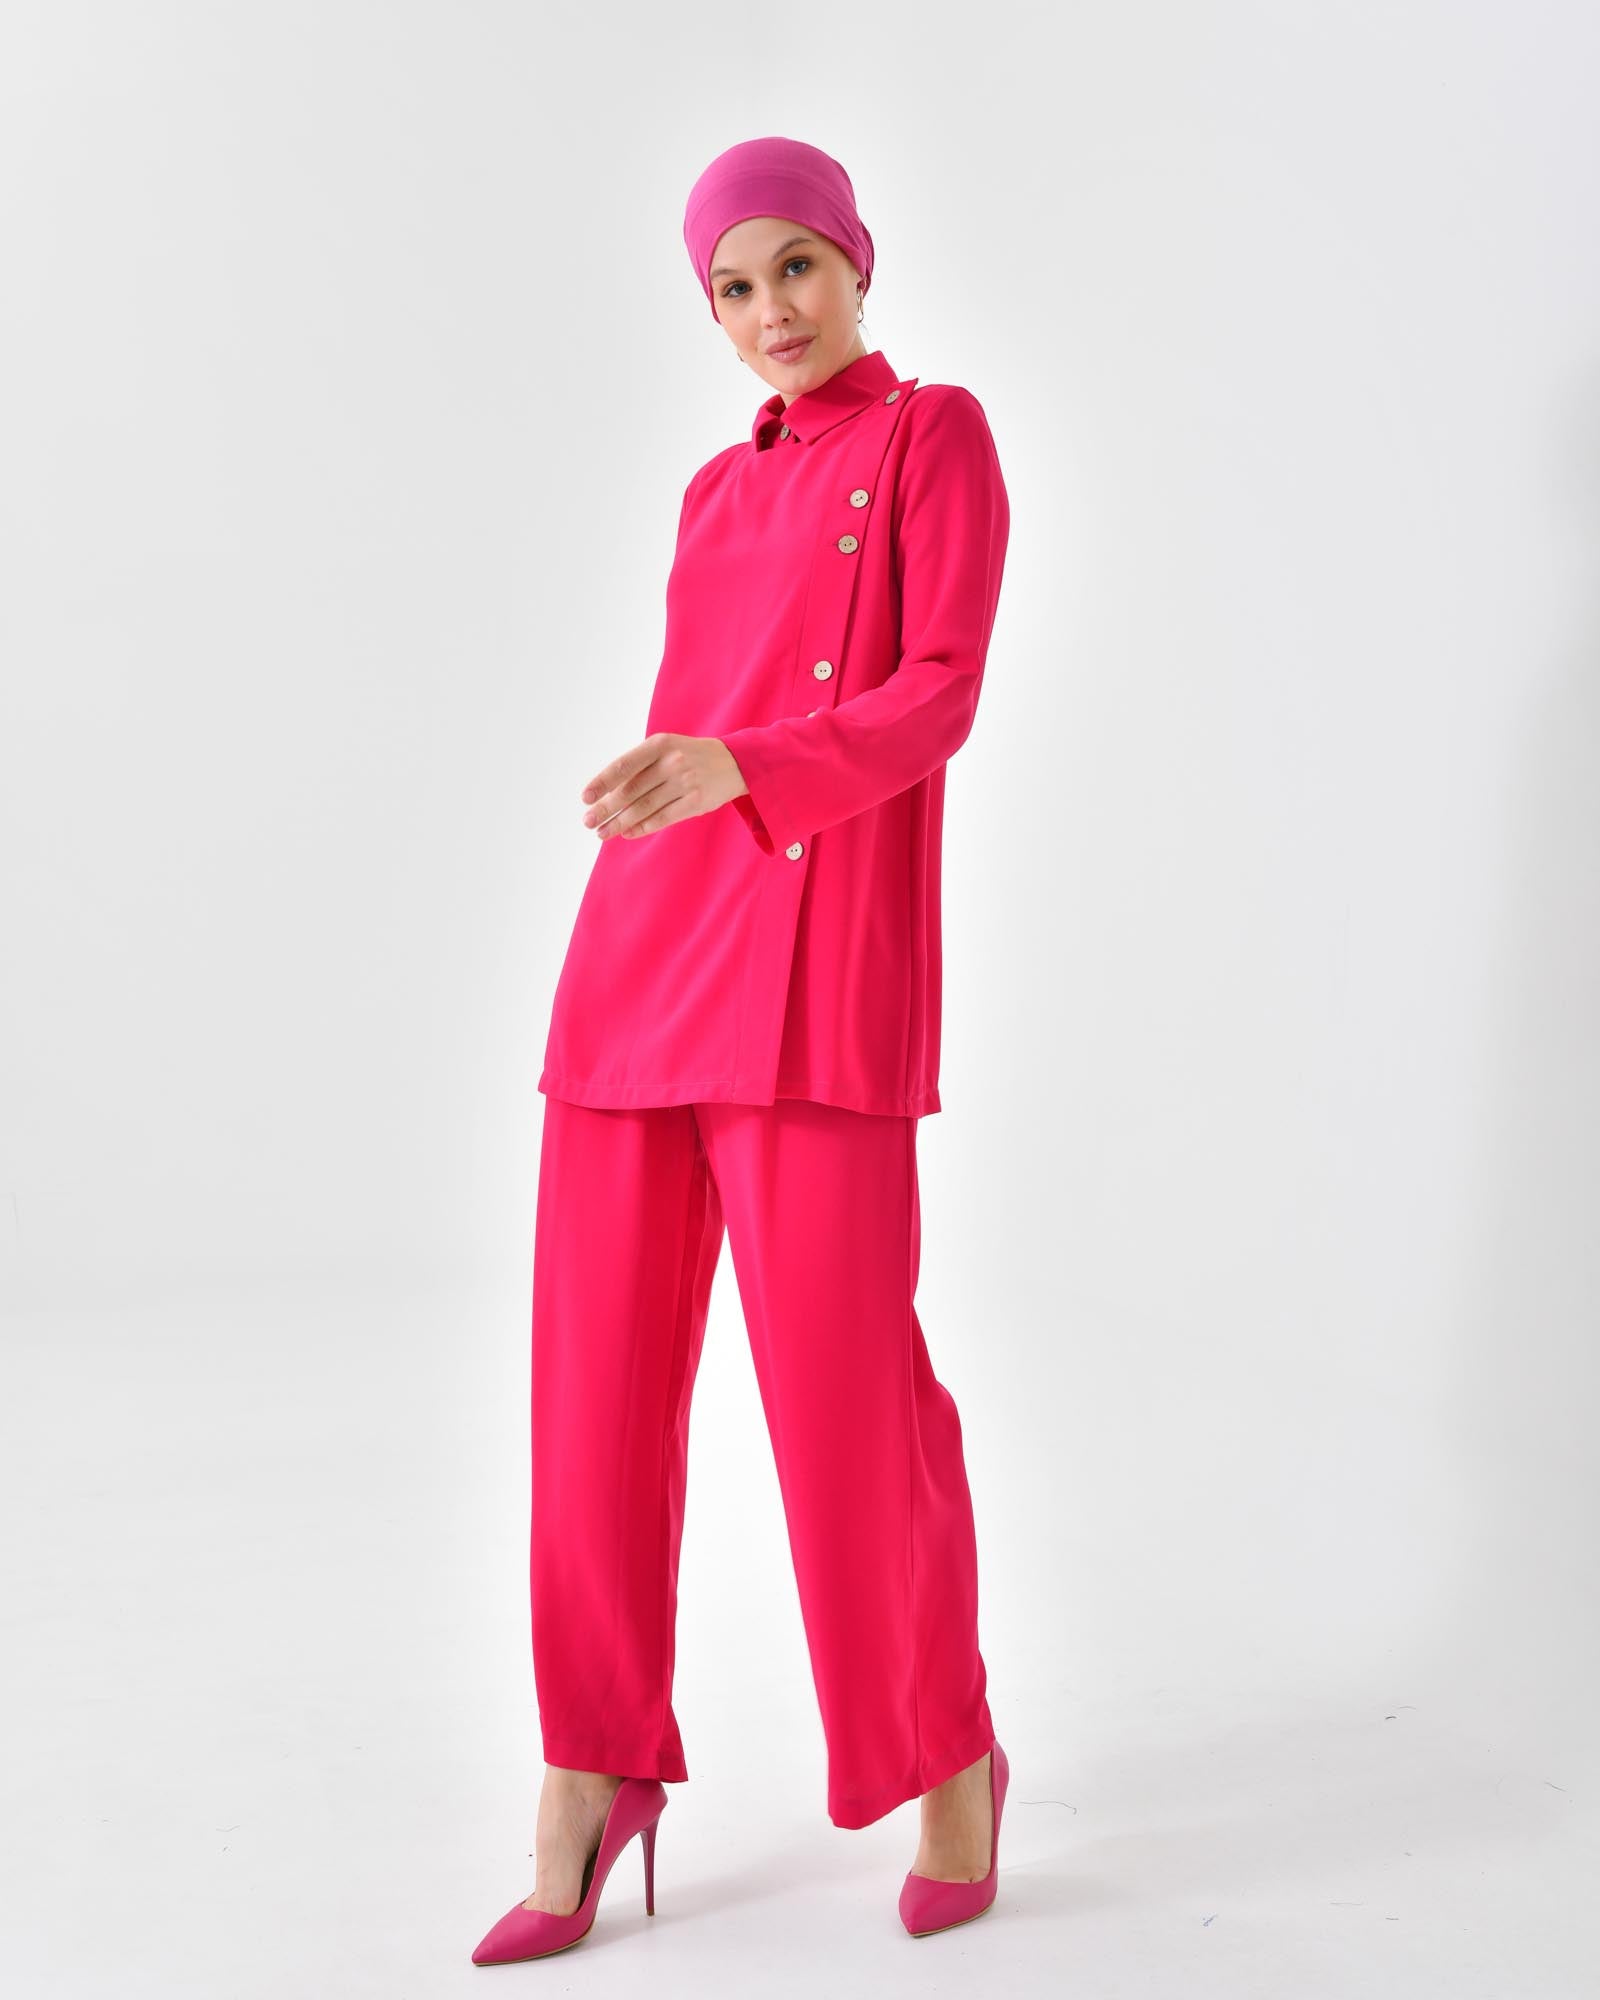 Hijab Zweiteiler- Damen Zweiteiler - Bluse mit Knopfdetails vorne und breite Hose